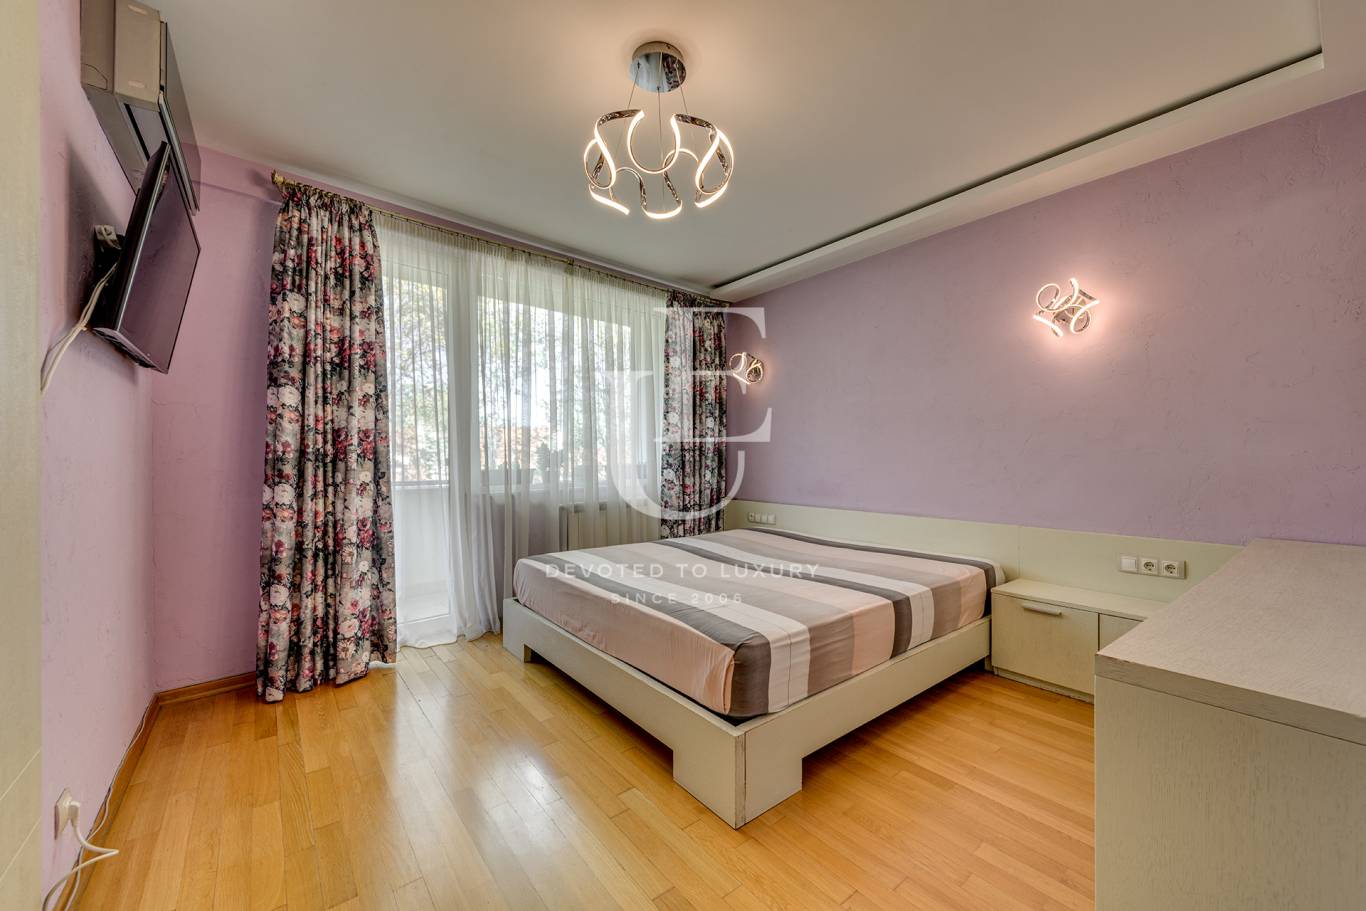 Апартамент под наем в София, Драгалевци - код на имота: N21669 - image 6